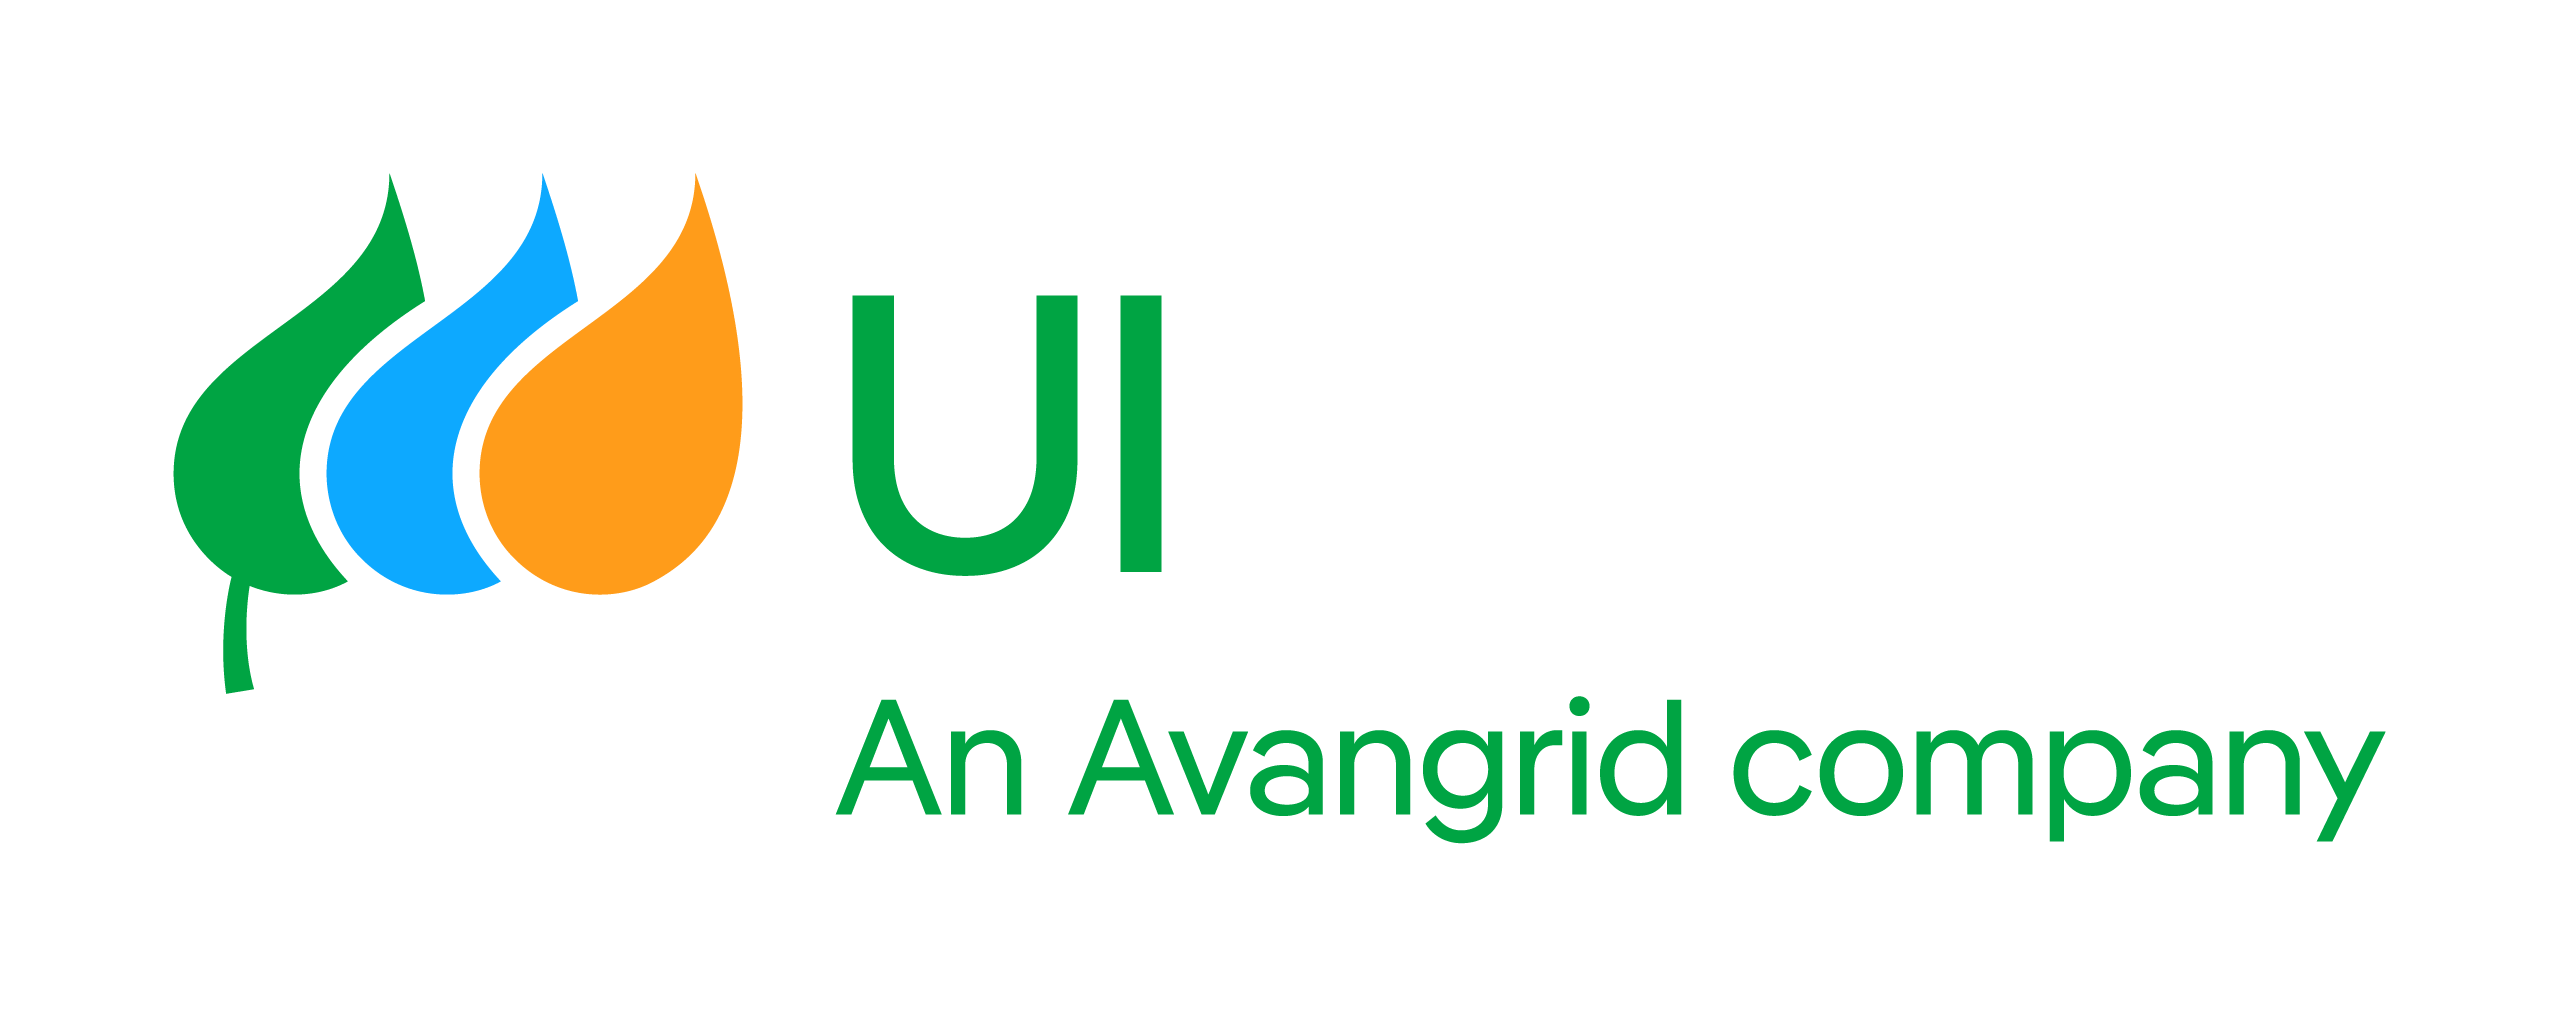 United Illuminating logo